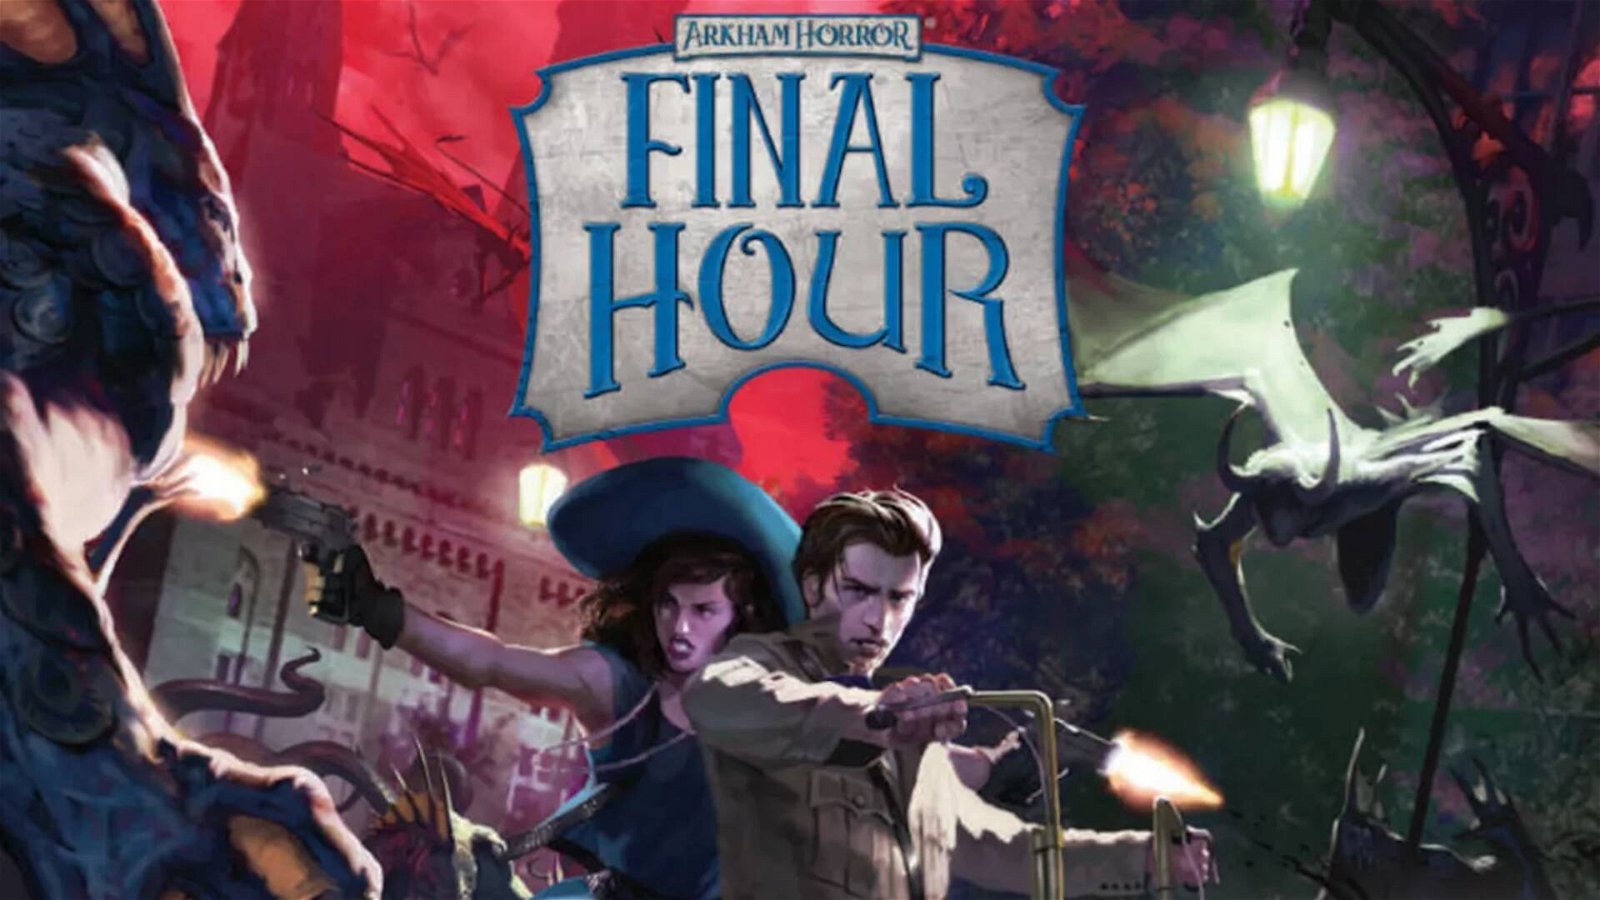 Immagine di Arkham Horror: Final Hour, la recensione